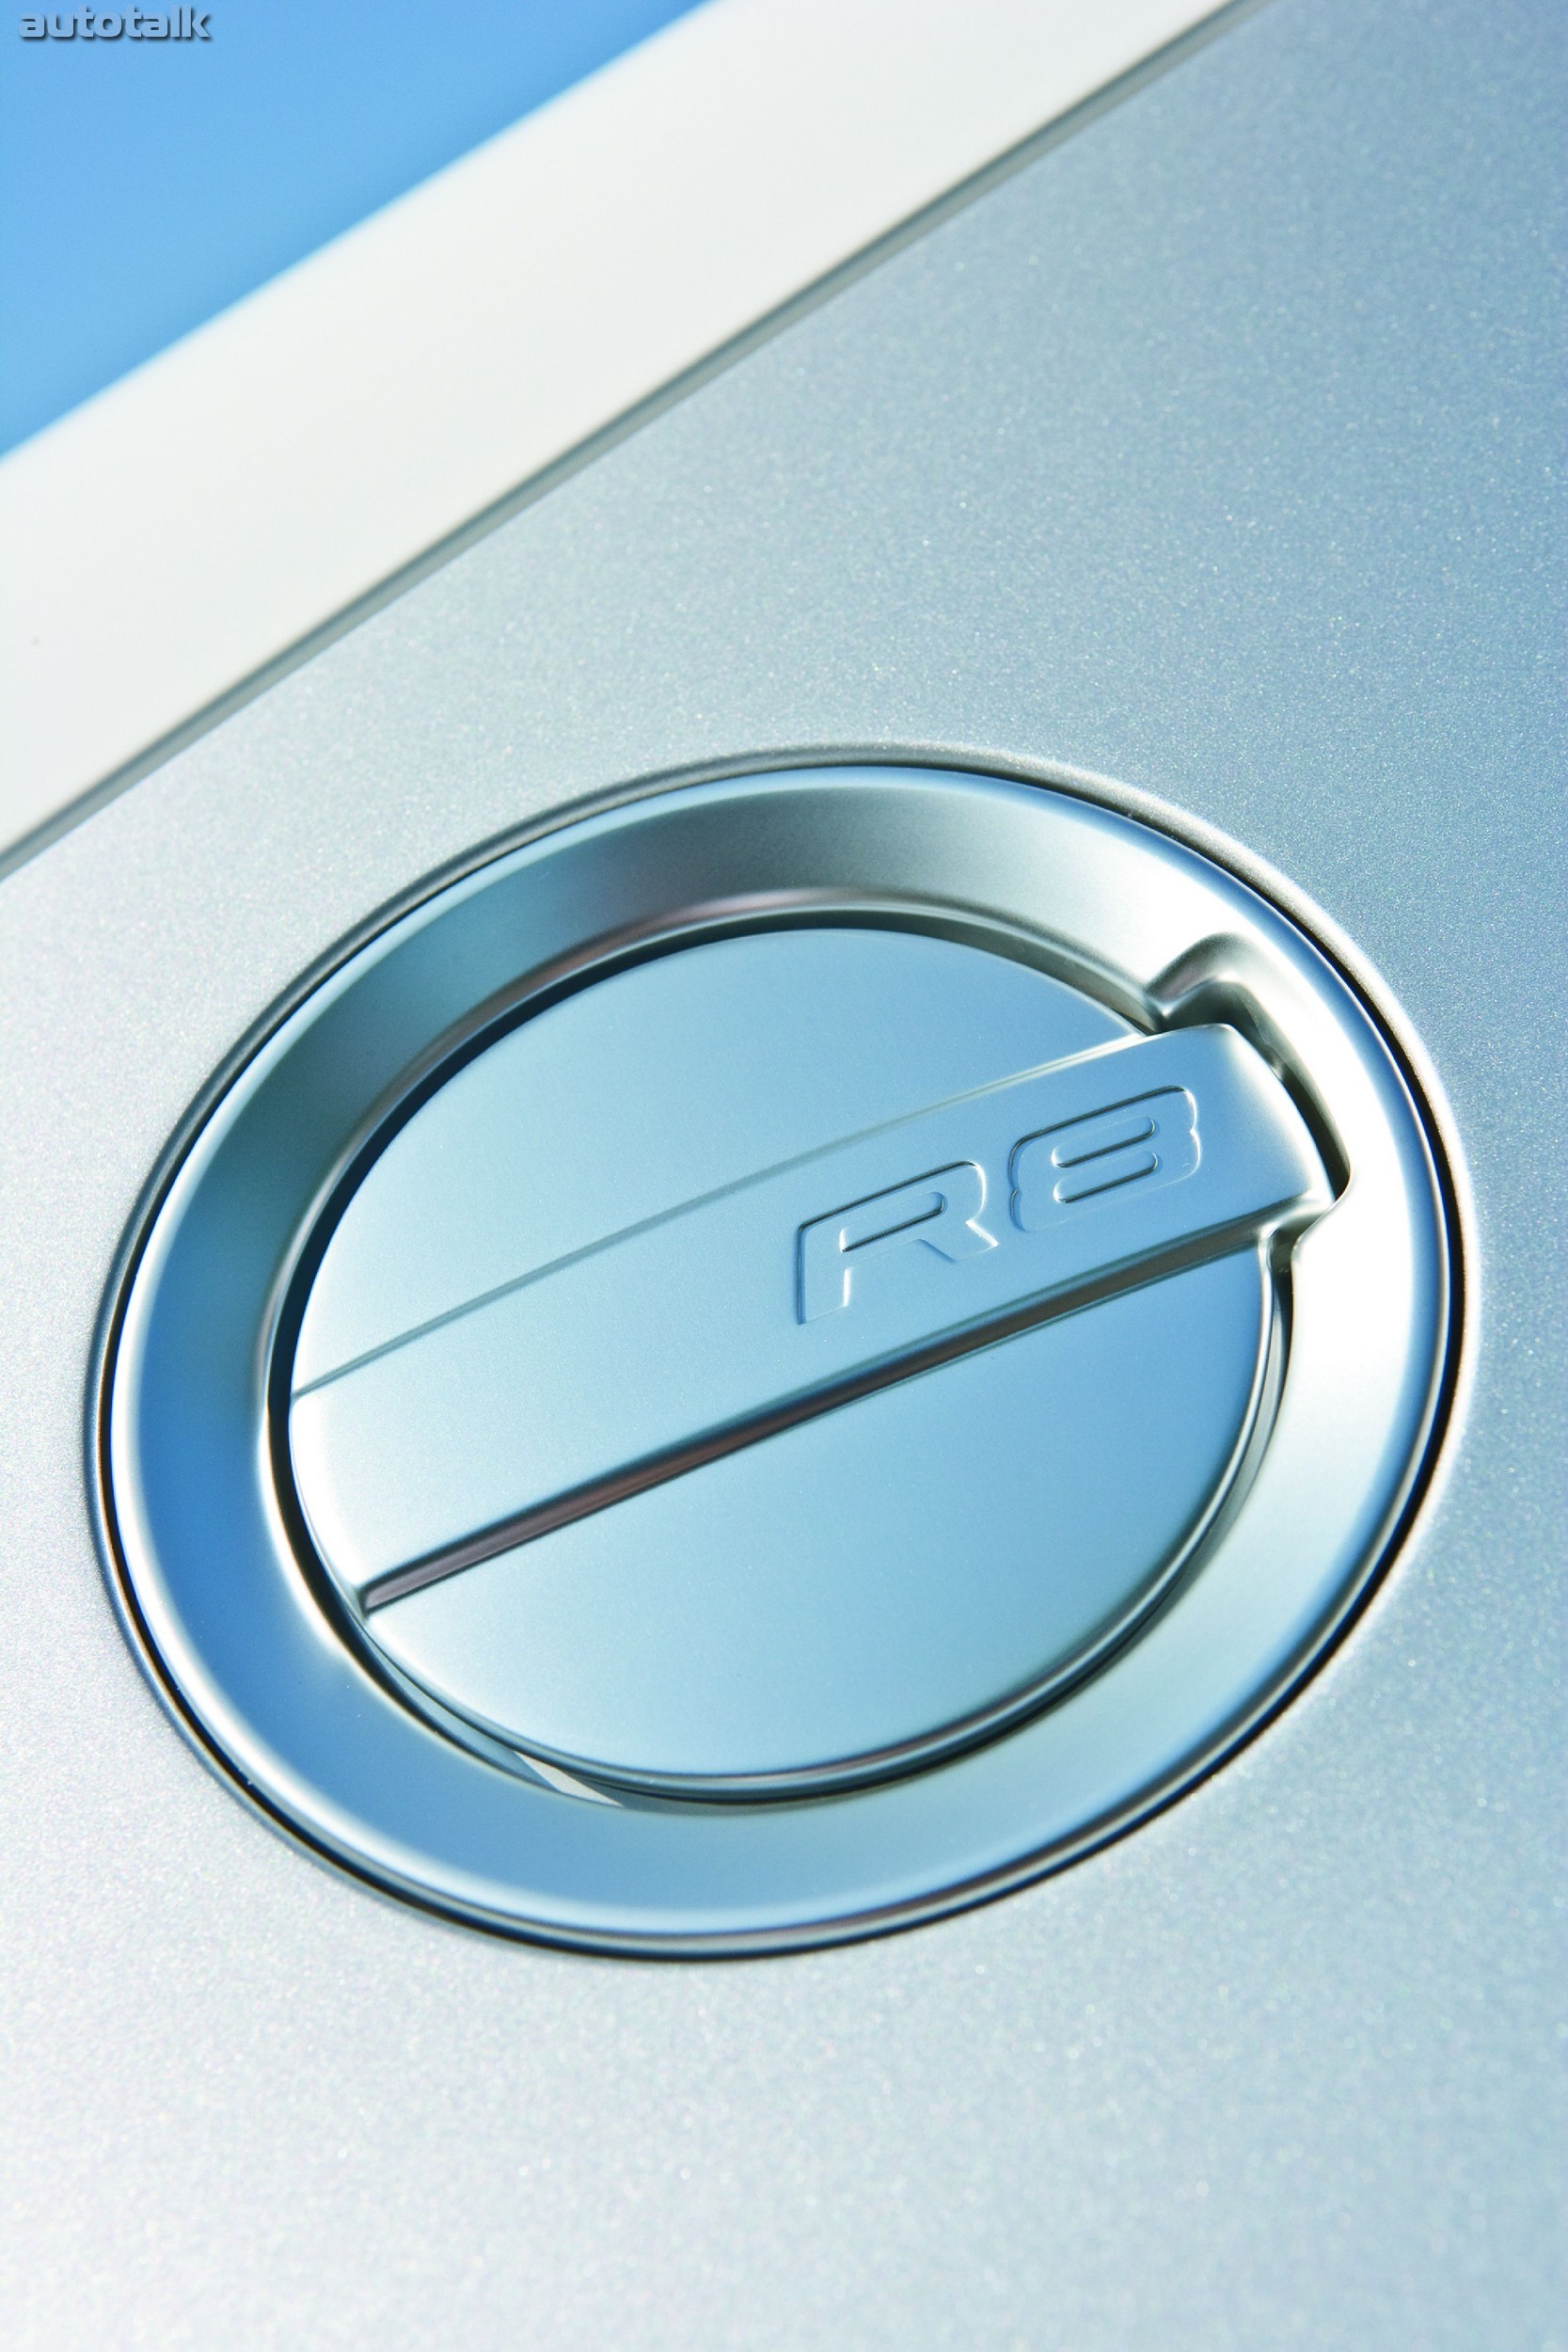 2009 Audi R8